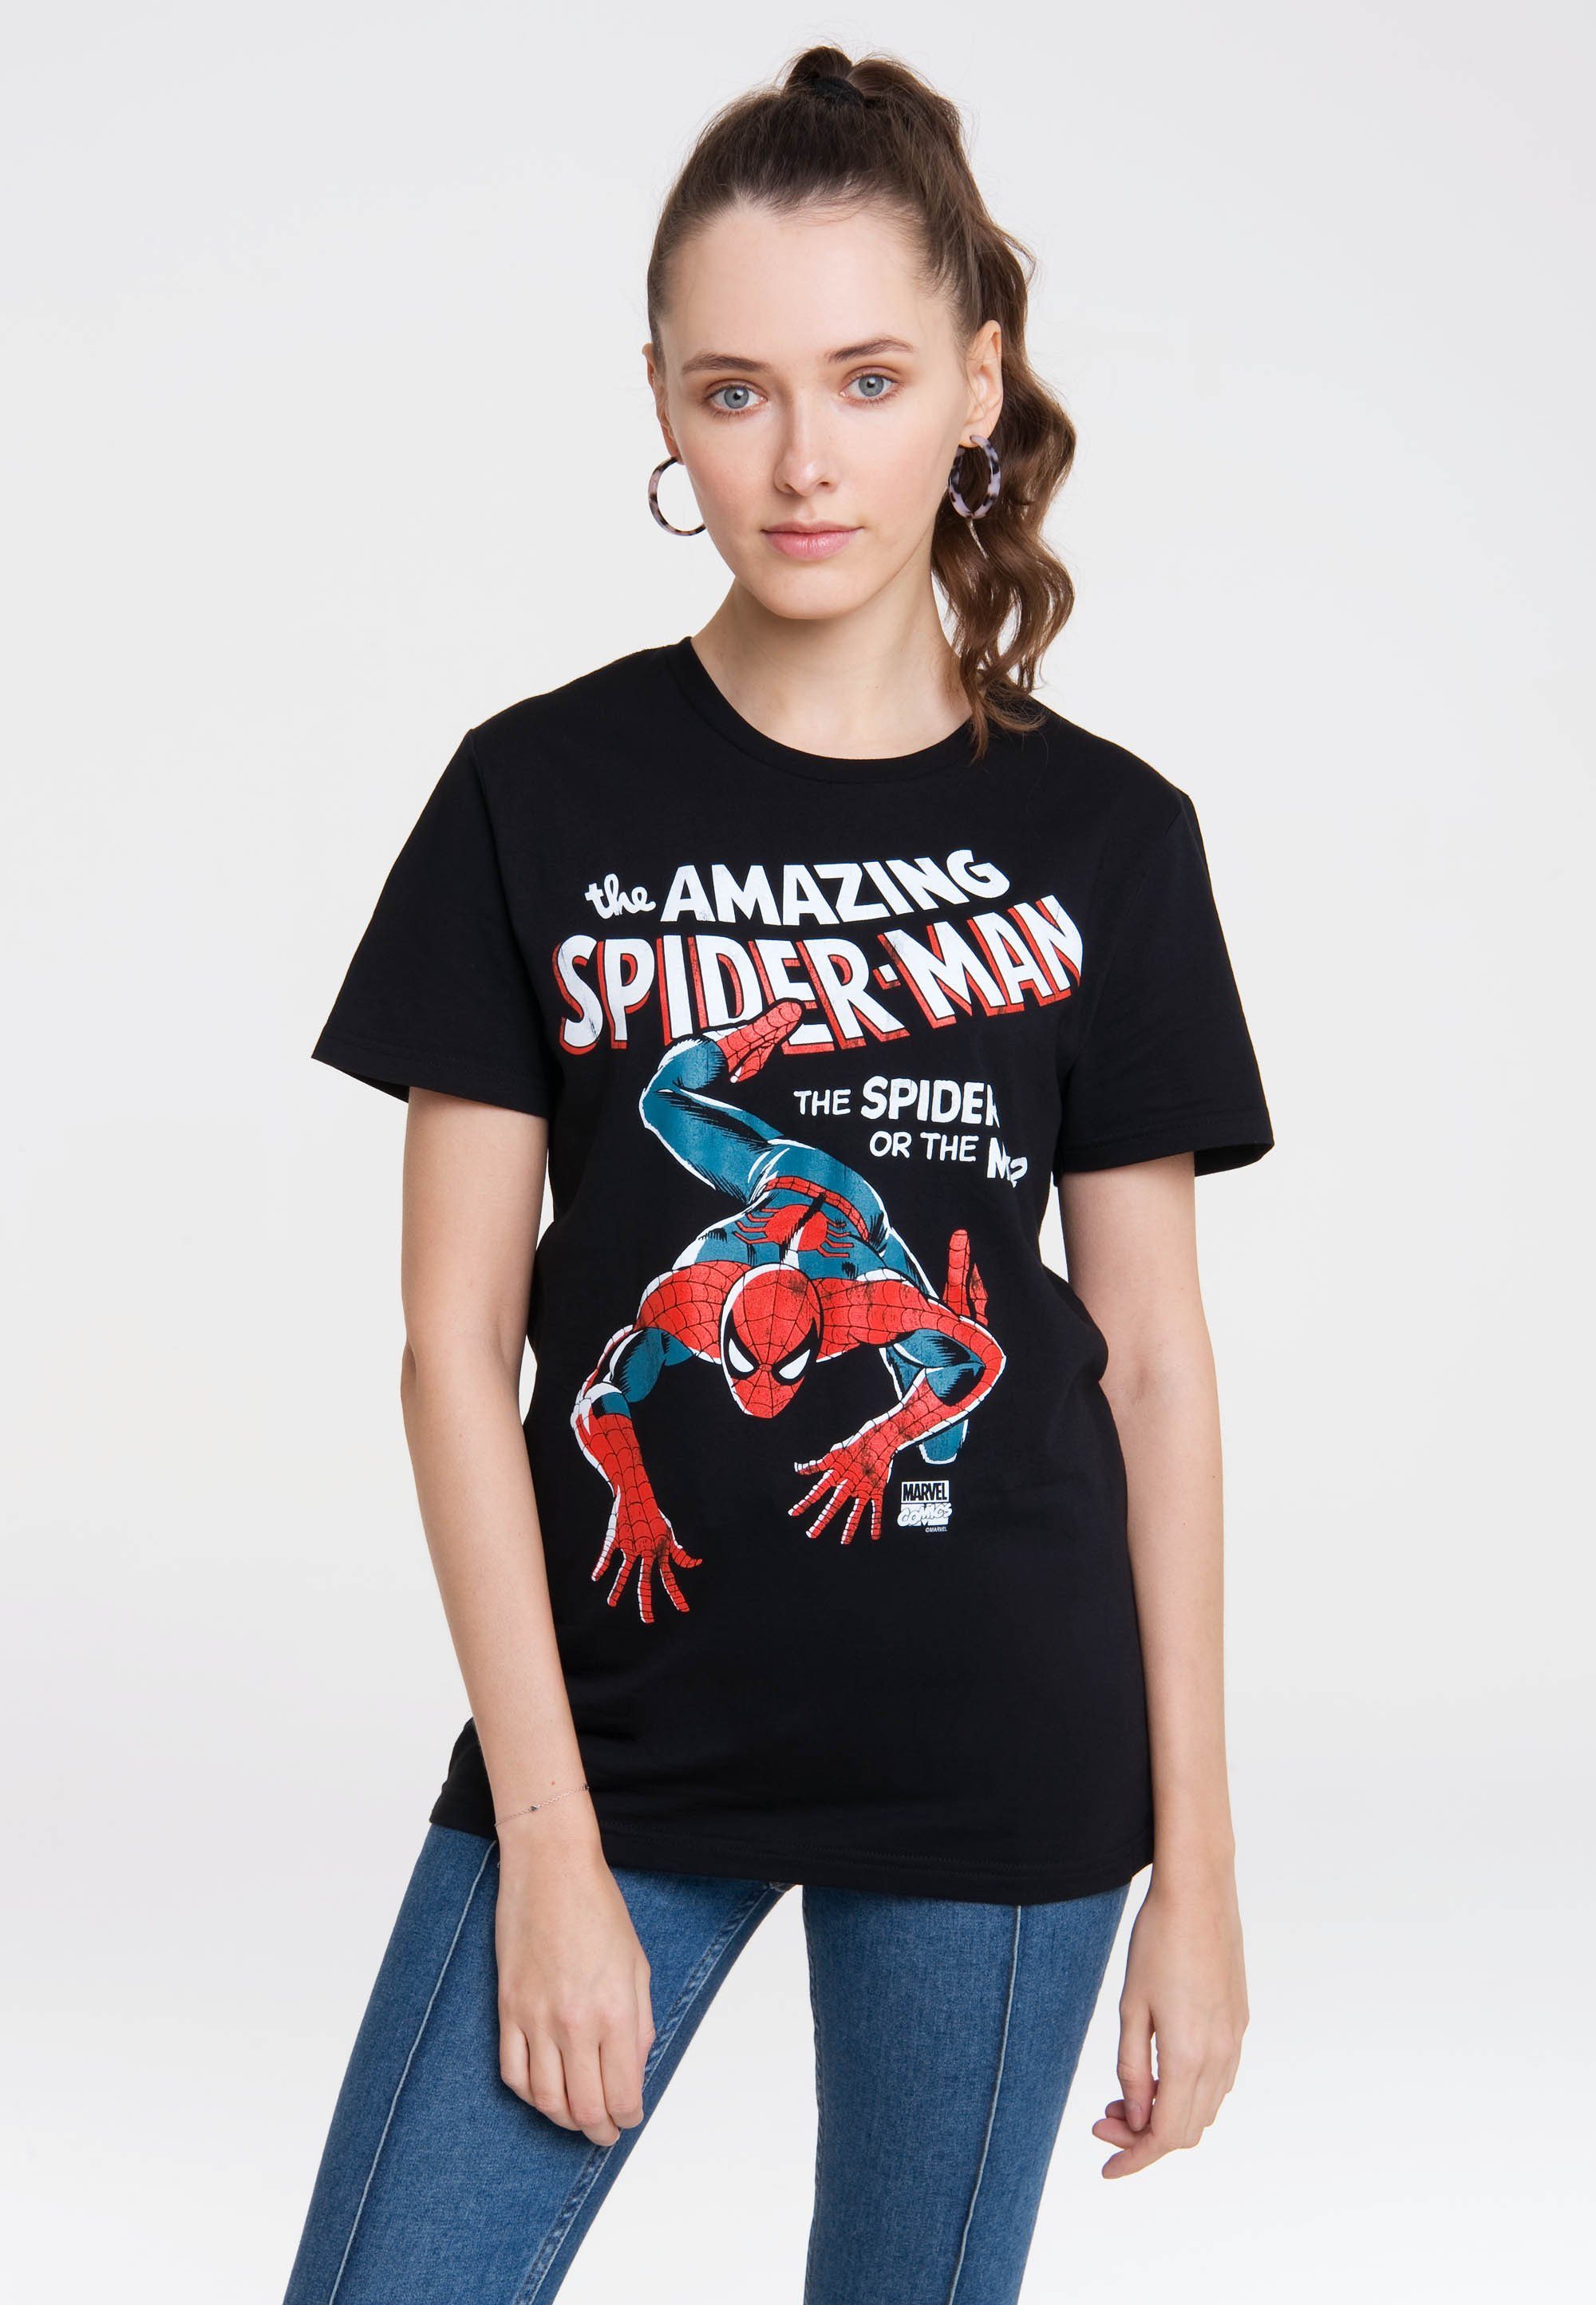 Karrierechance LOGOSHIRT T-Shirt Marvel - Amazing Spider-Man mit Spider-Man-Print coolem